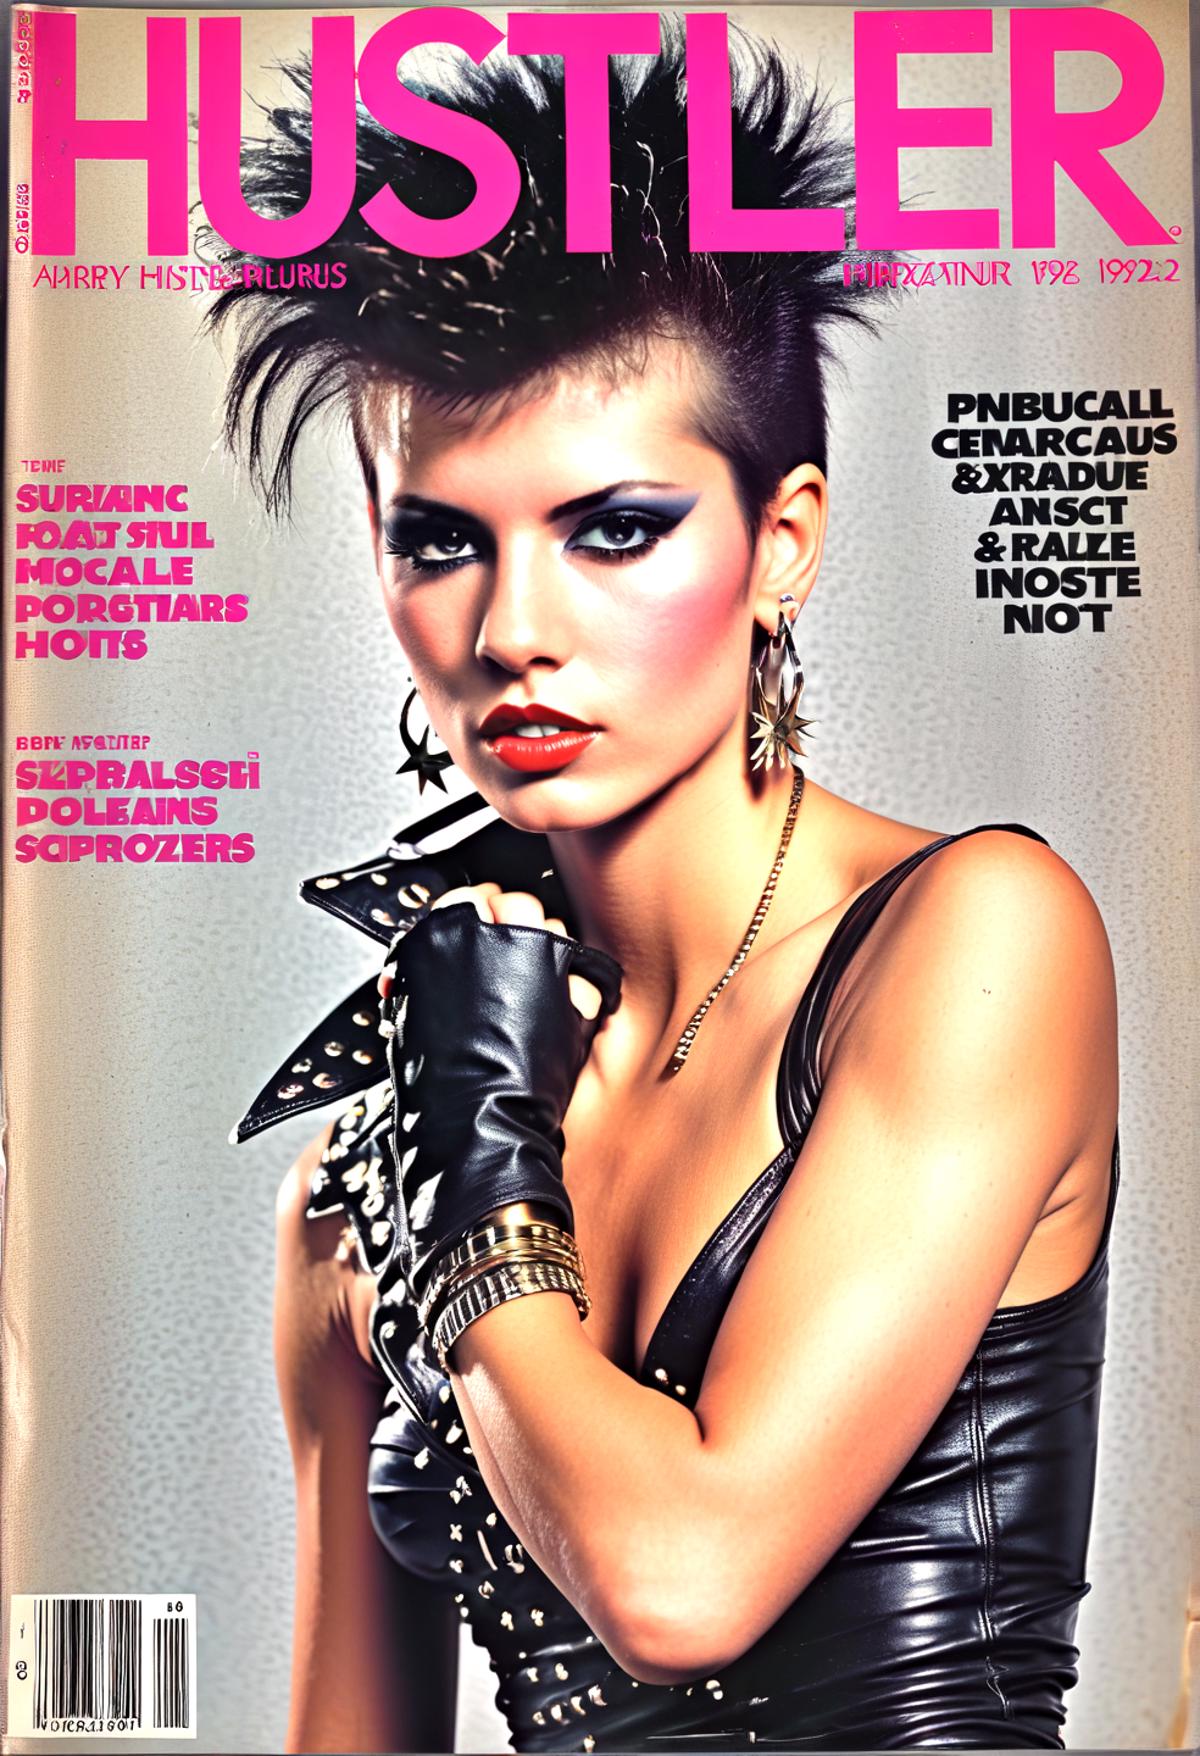 Hustler (Vintage Magazine 74-84) [SDXL] image by denrakeiw